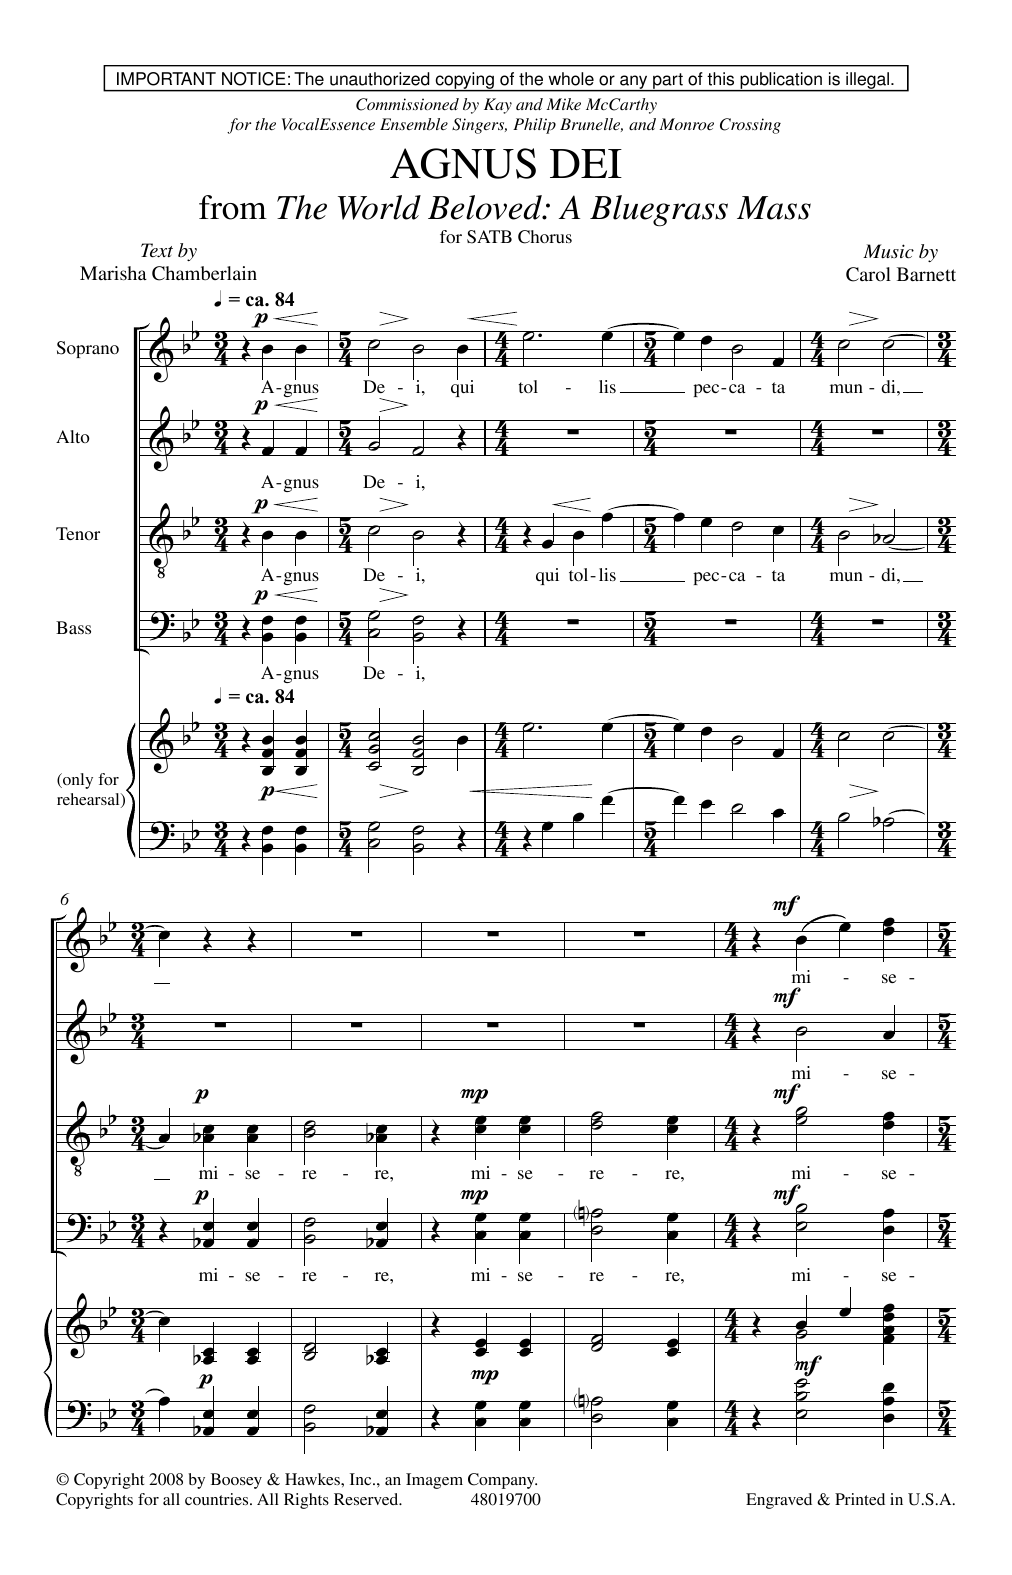 Carol Barnett Agnus Dei (from The World Beloved: A Bluegrass Mass) sheet music notes and chords arranged for SATB Choir